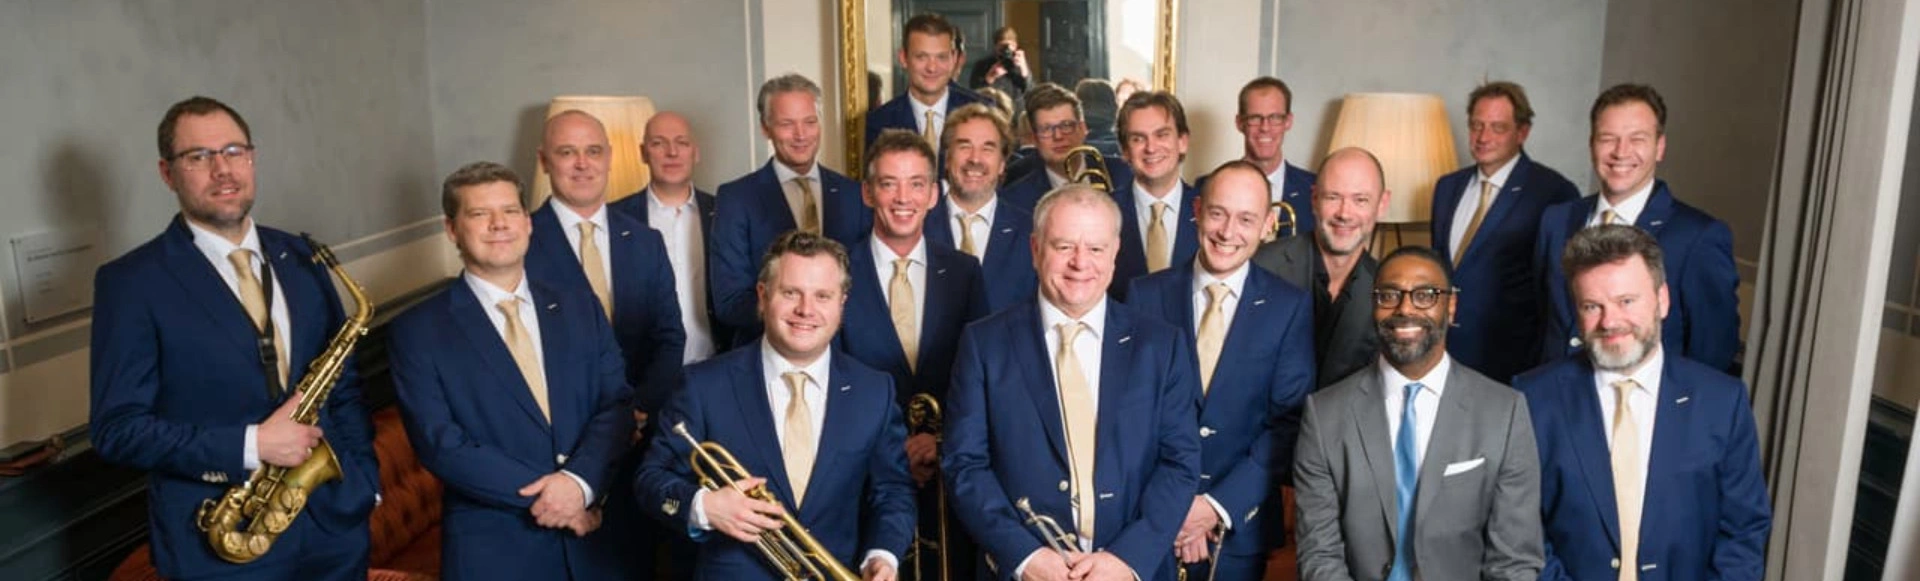 Джазовый оркестр Концертгебау (Нидерланды)